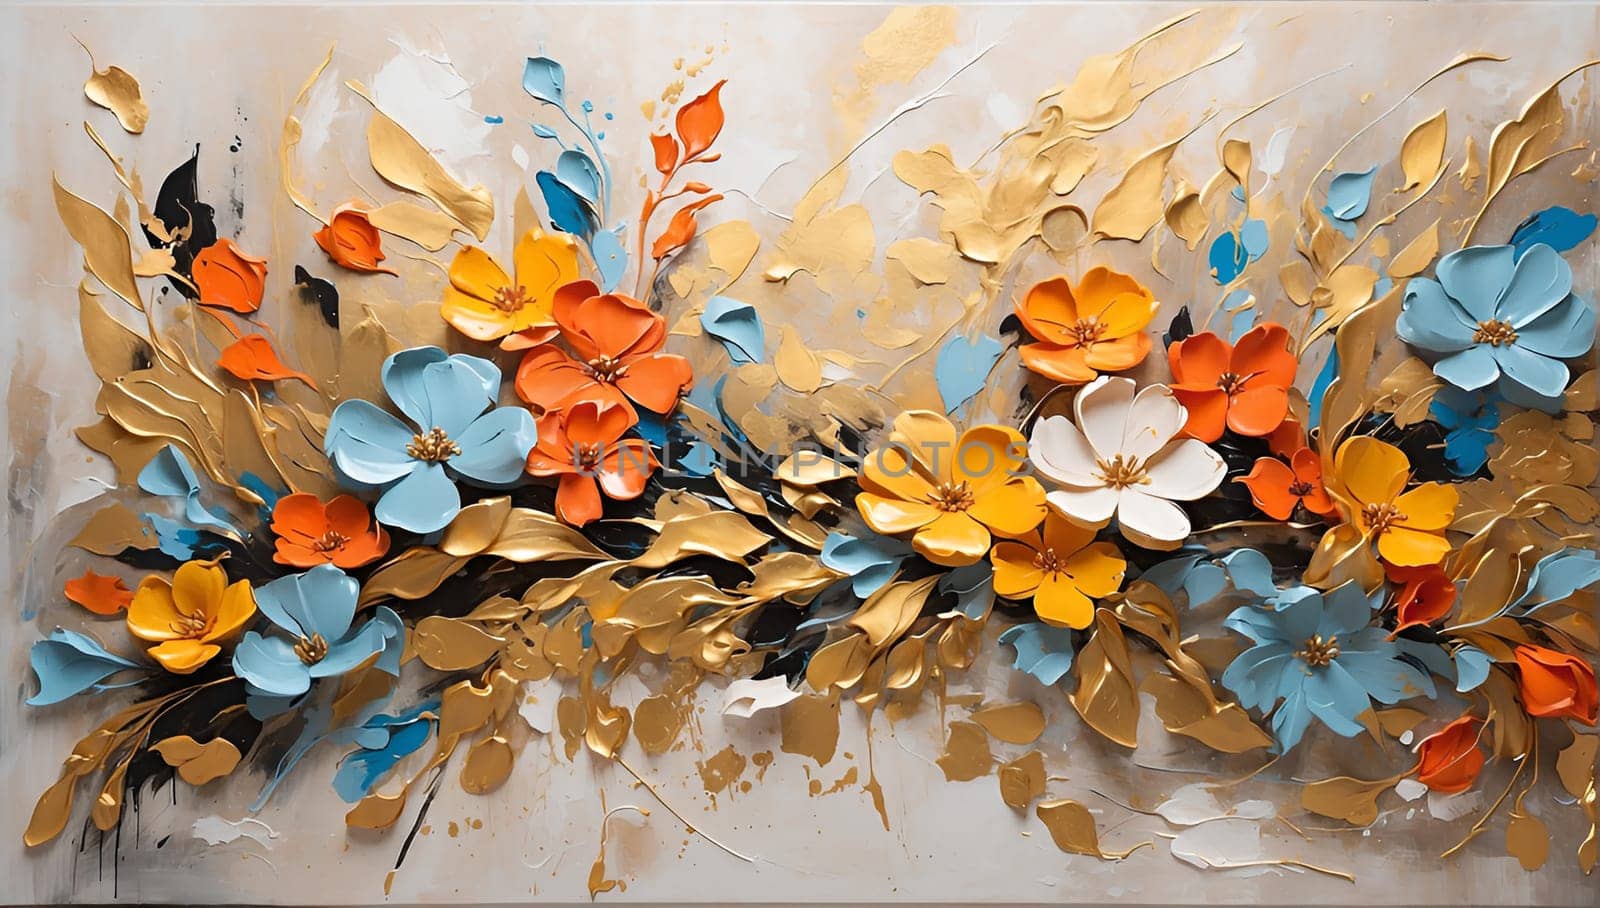 Colorful flower arrangement with acrylic paints by Севостьянов